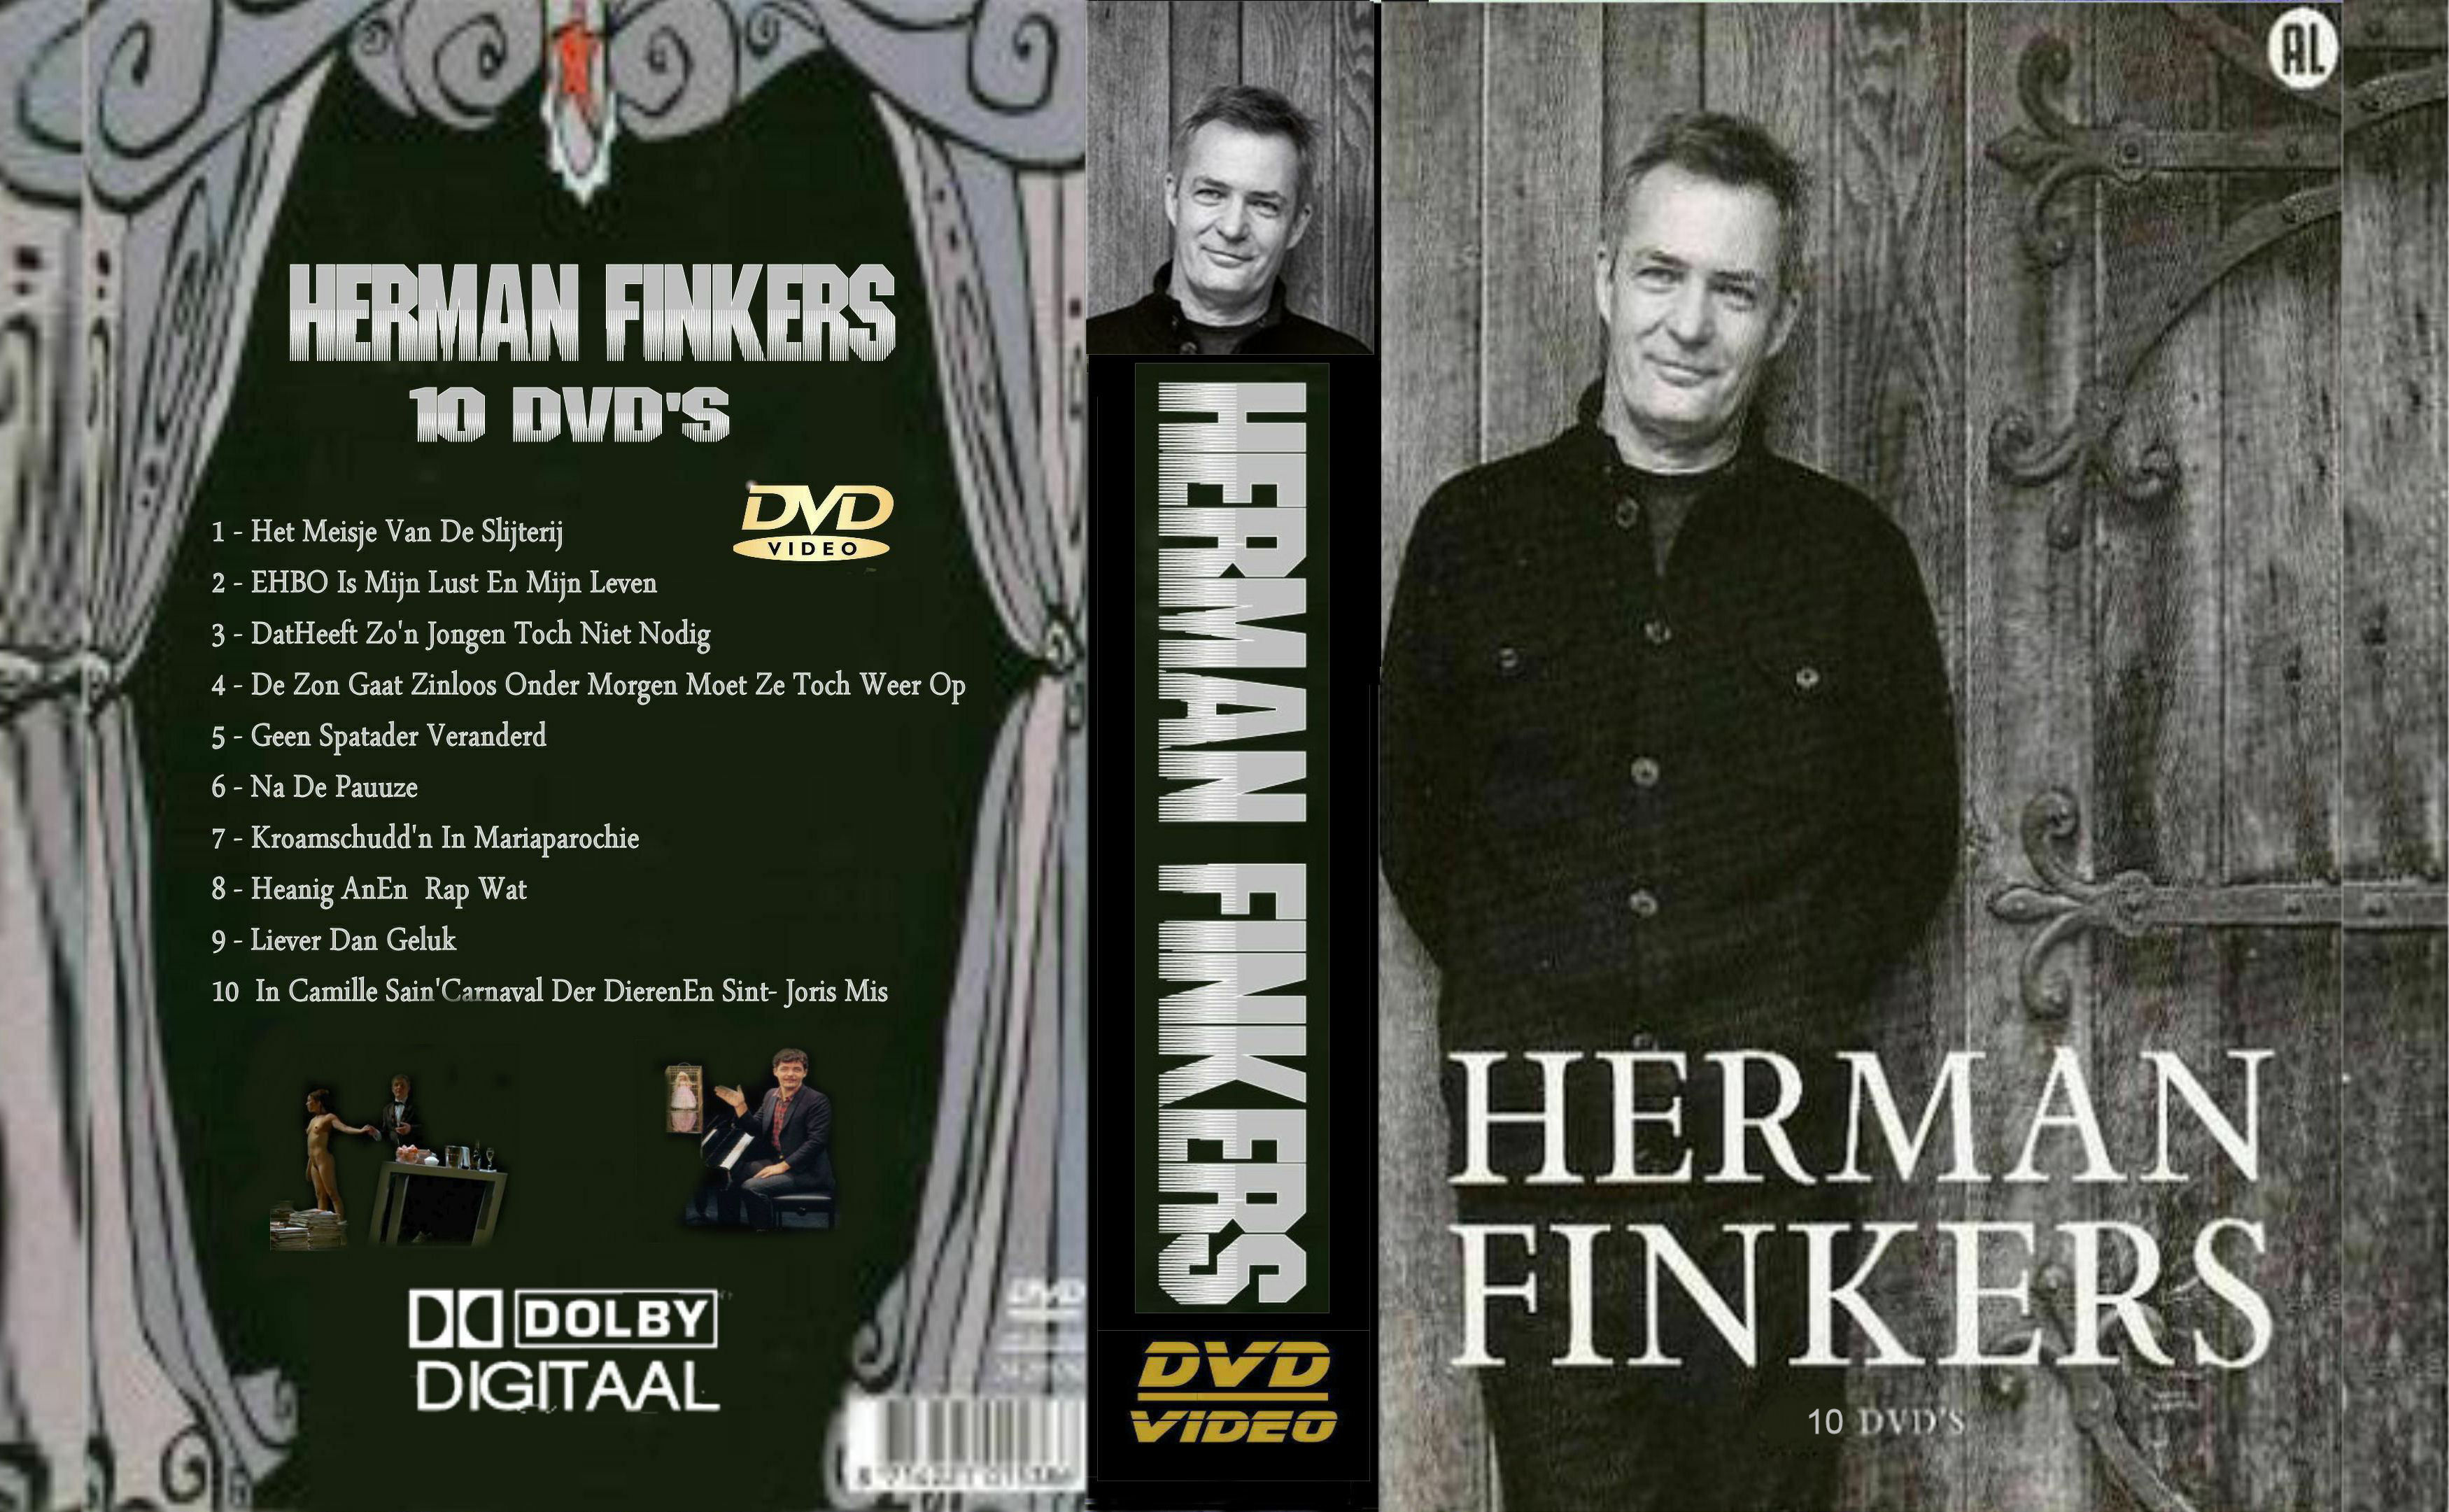 Herman Finkers Collectie DvD 4